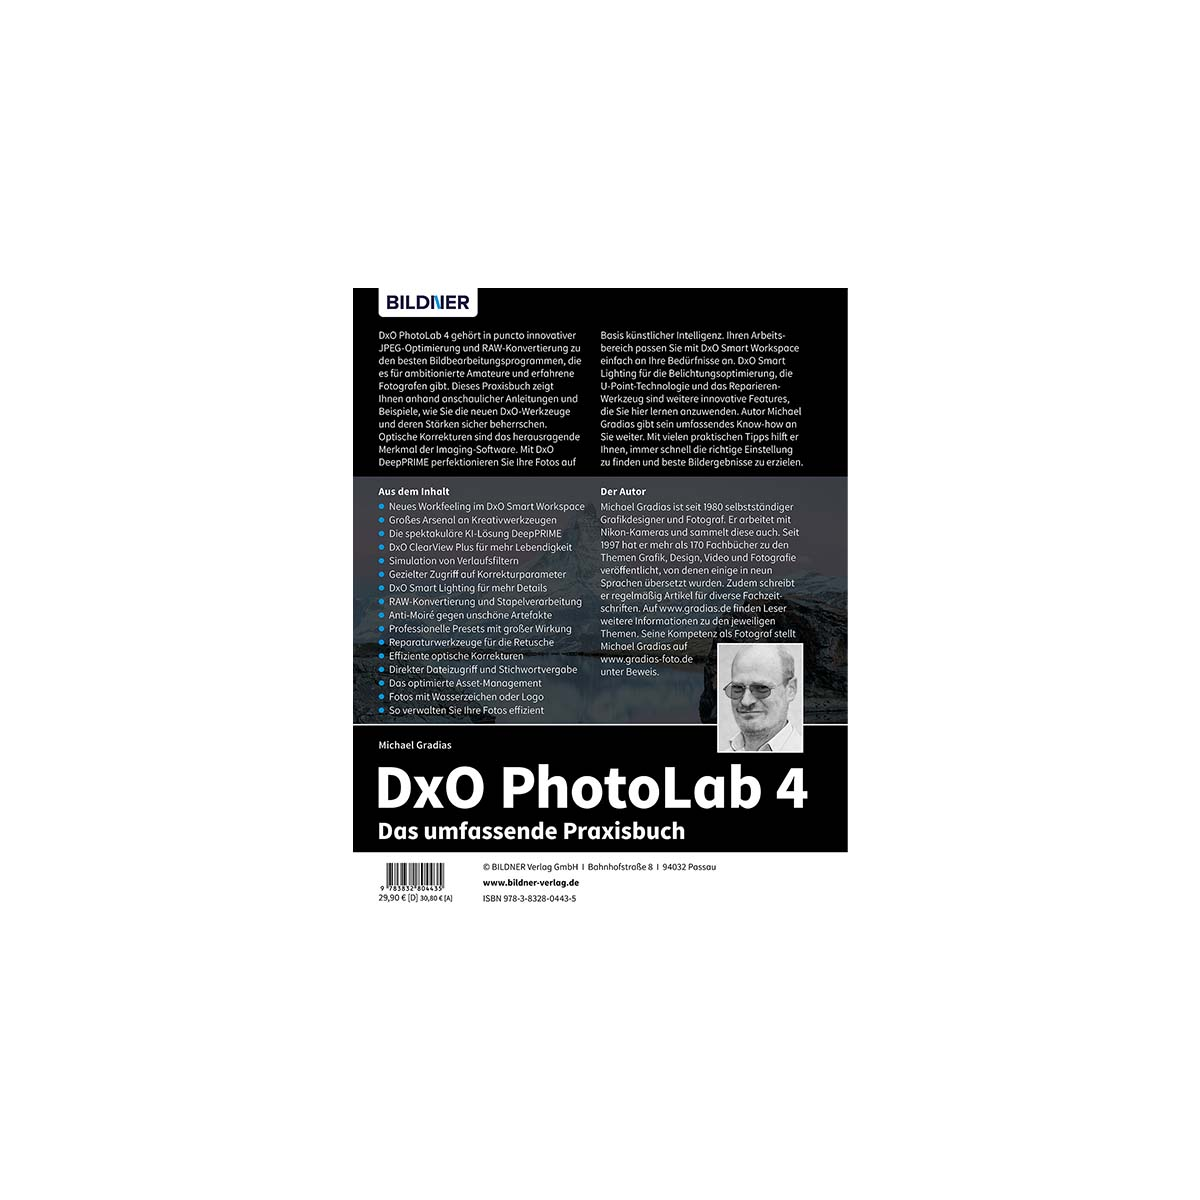 - PhotoLab umfassende Das DxO Praxisbuch 4